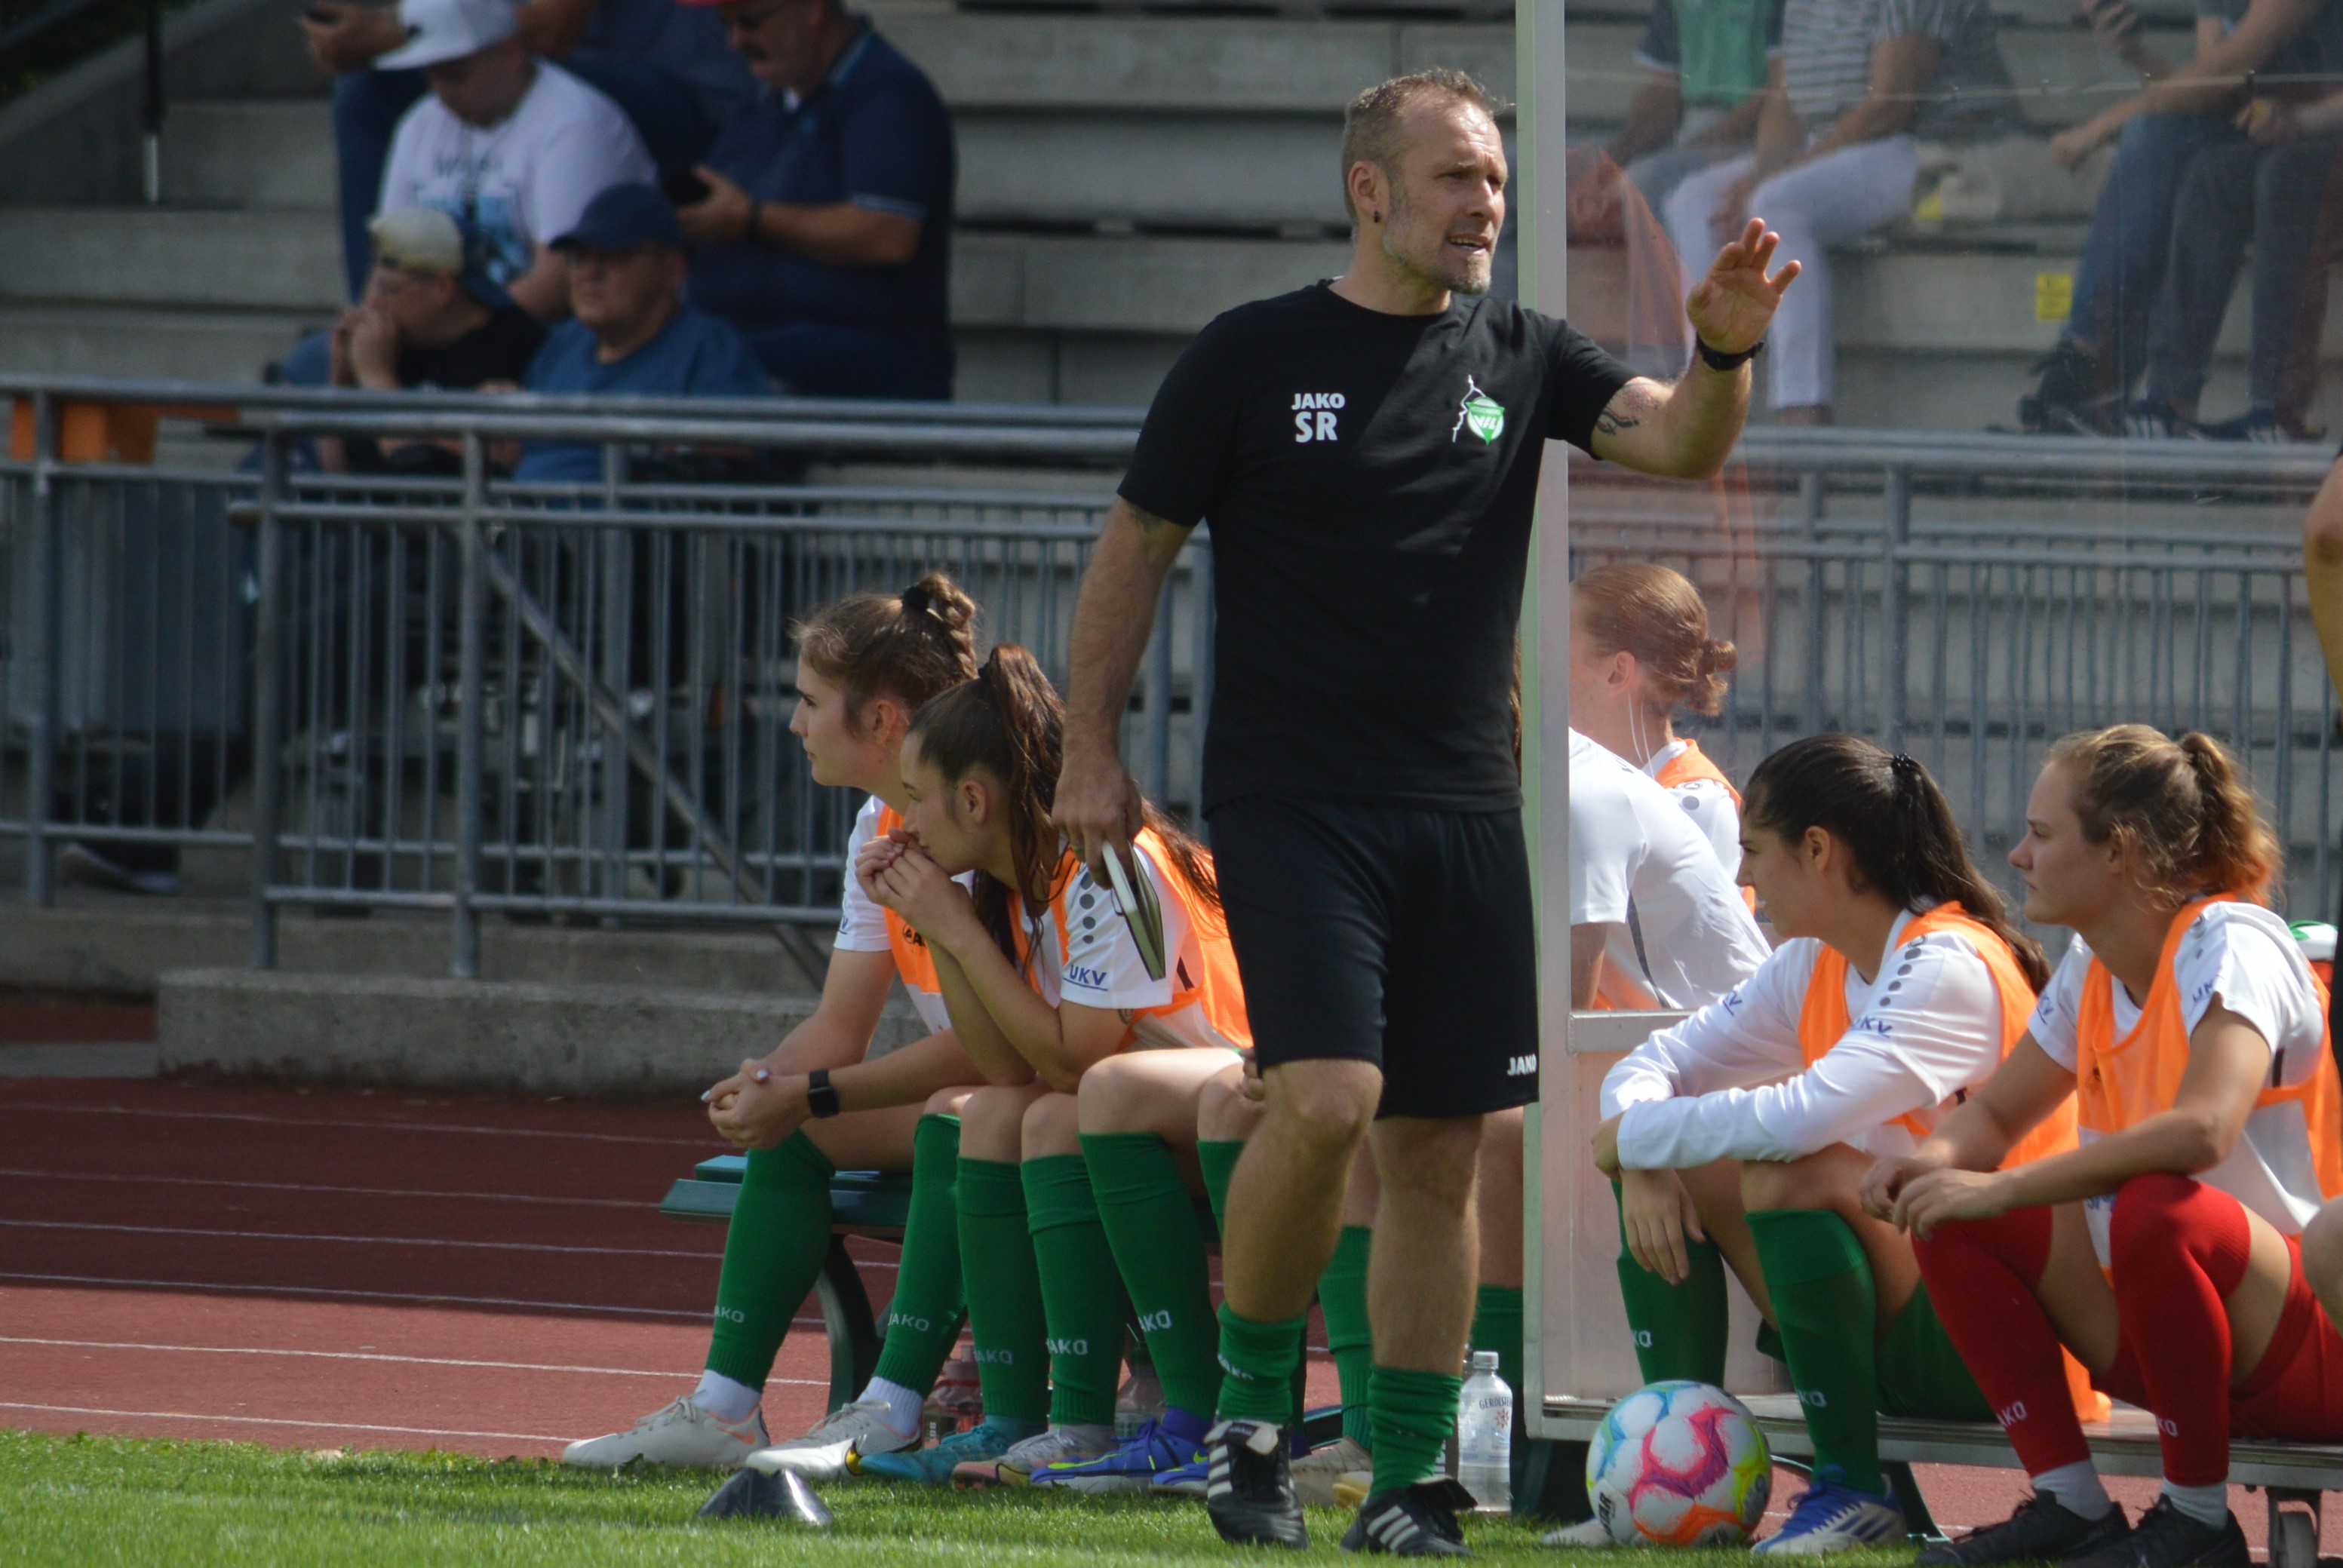 Der Maichinger Steven Riechers geht im Sommer in seine dritte Saison als Trainer der Oberliga-Fußballerinnen des VfL Herrenberg.Bild: Zvizdiç